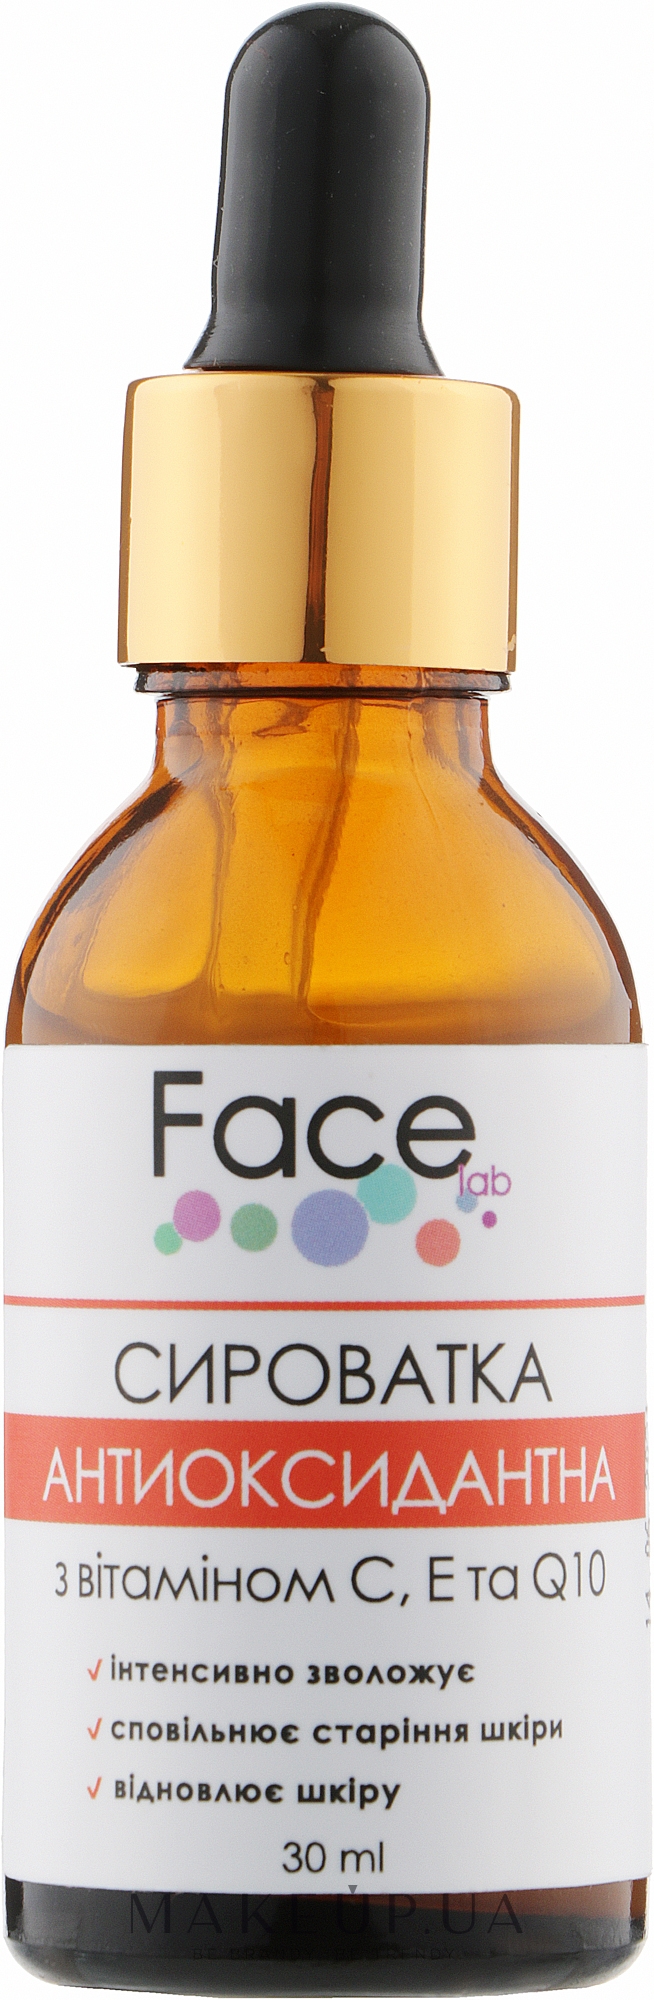 Антиоксидантная сыворотка для лица - Face lab Antioxidant Vitamin С & Q10 Serum  — фото 30ml